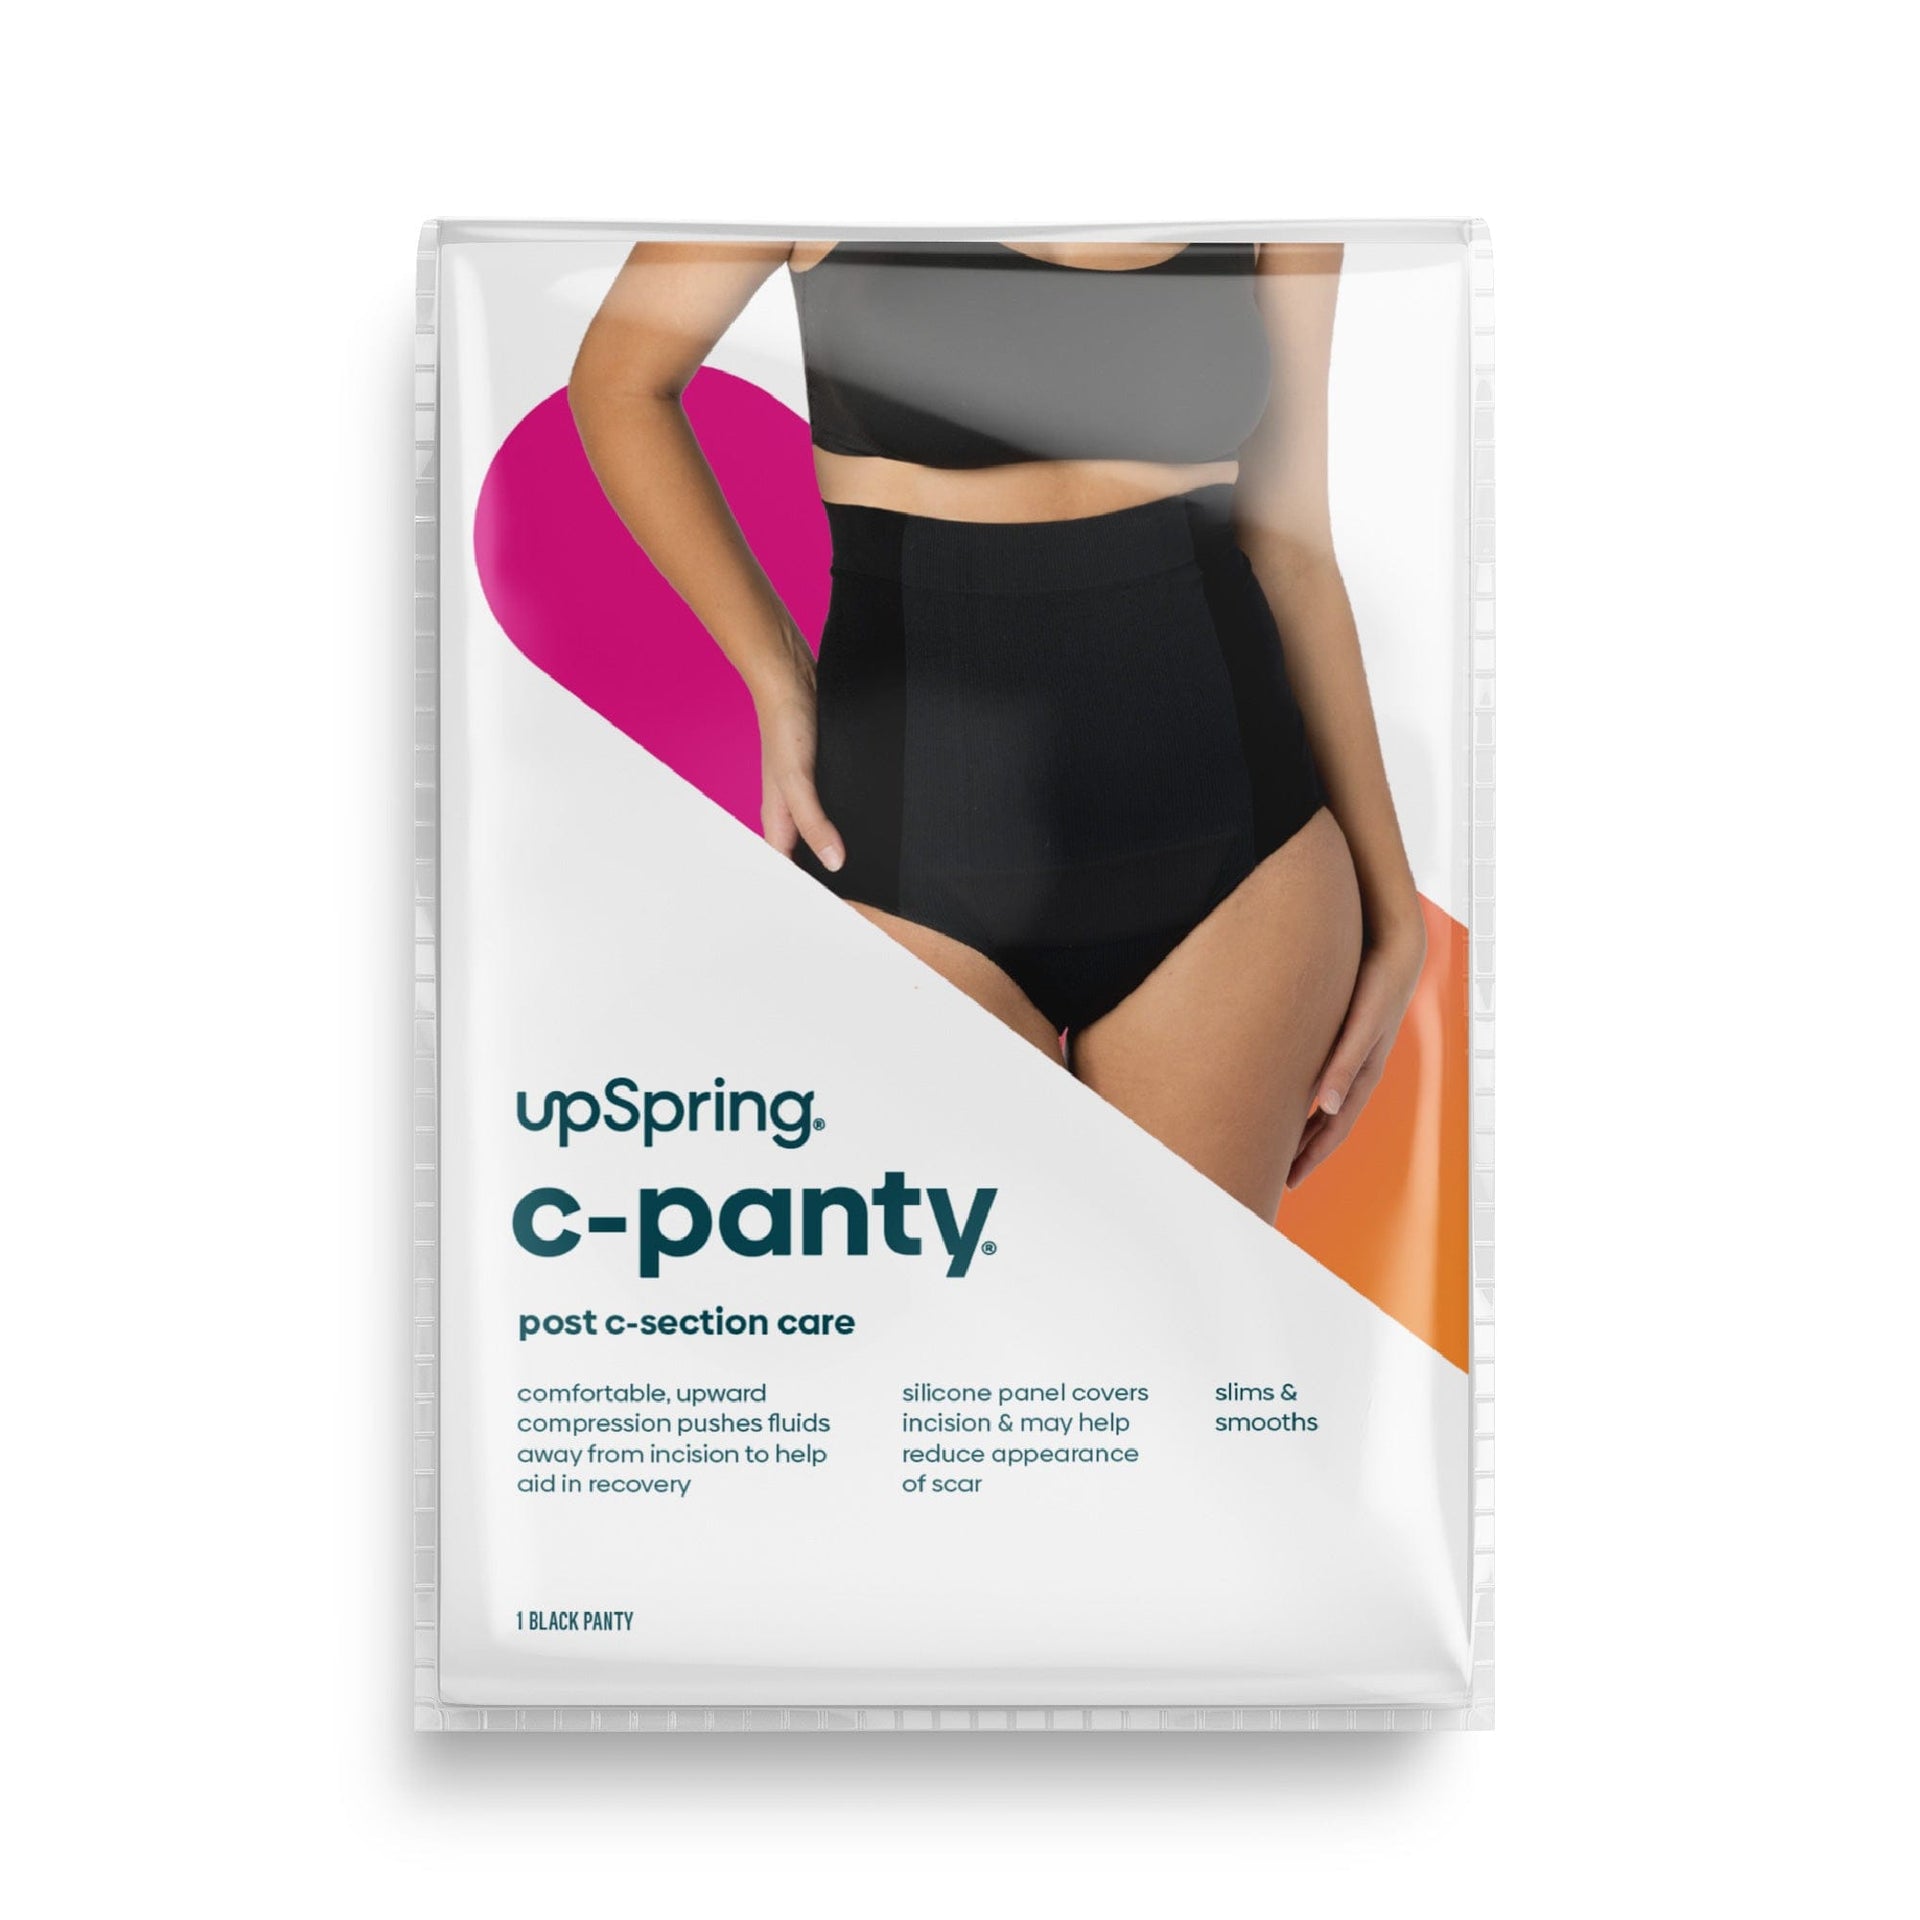 New UpSpring Post Baby Panty Postpartum Care High Waist Underwear